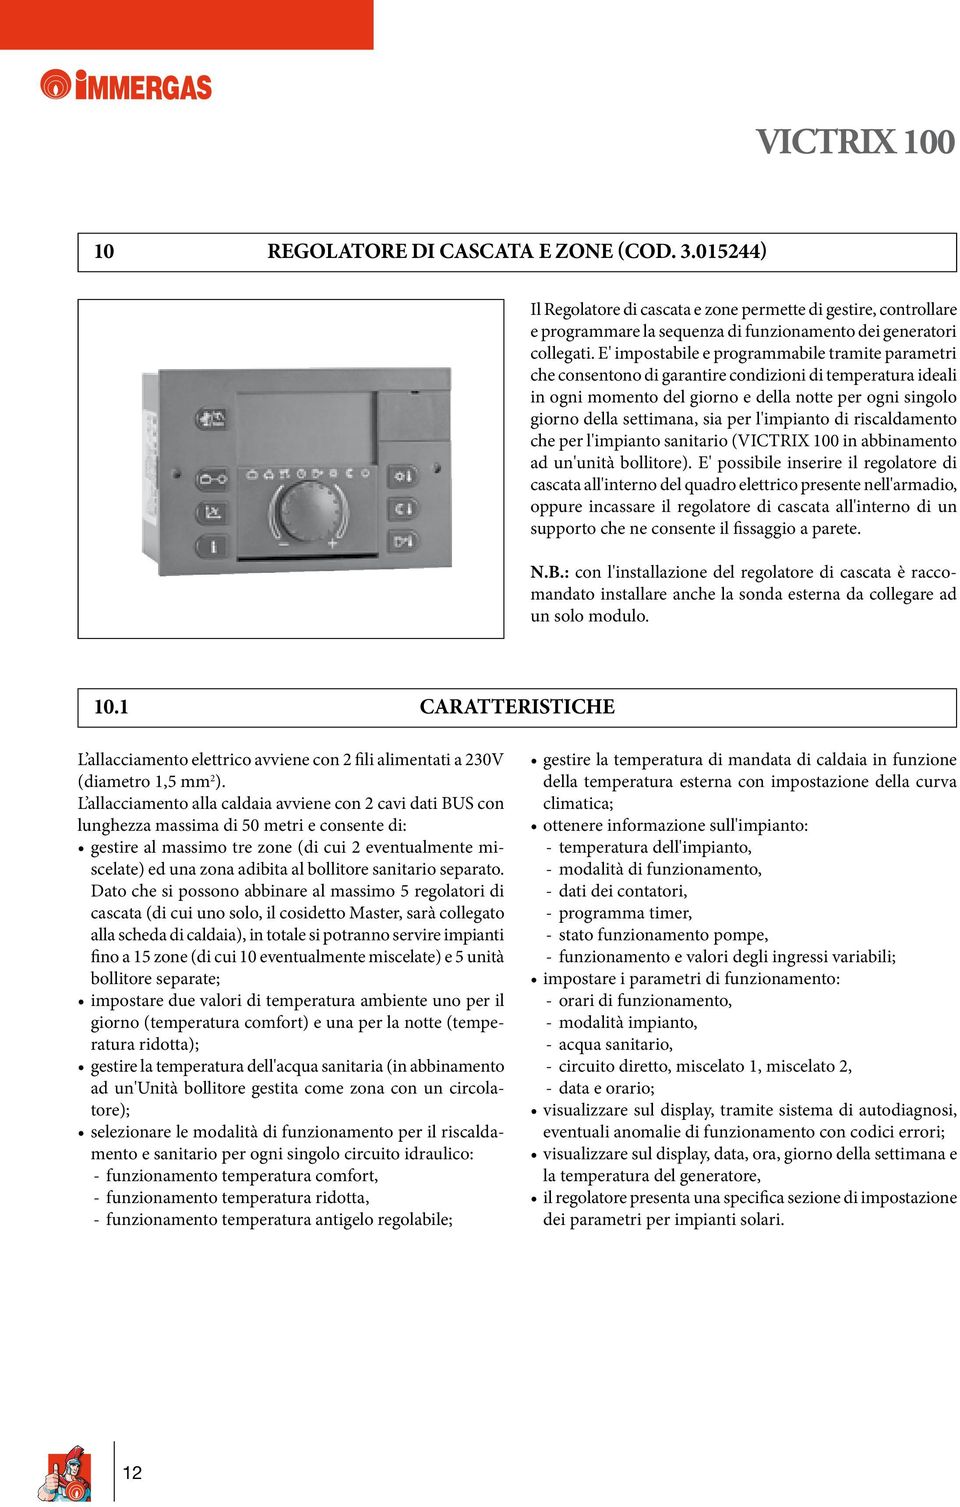 l'impianto di riscaldamento che per l'impianto sanitario (VICTRIX 100 in abbinamento ad un'unità bollitore).